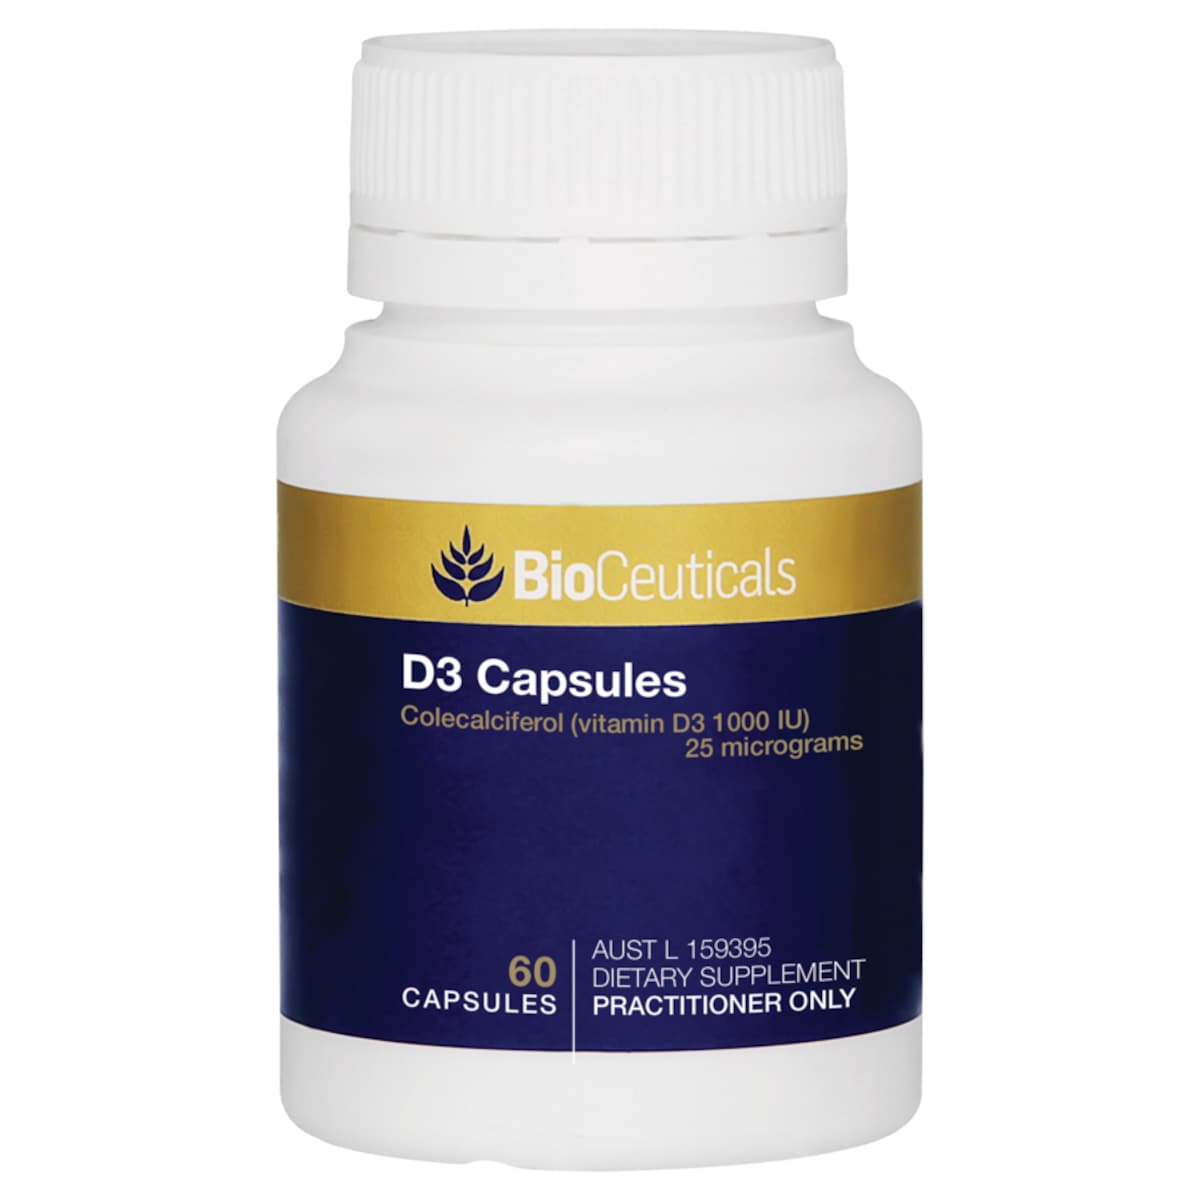 BioCeuticals D3 Capsules 60 Soft Capsules